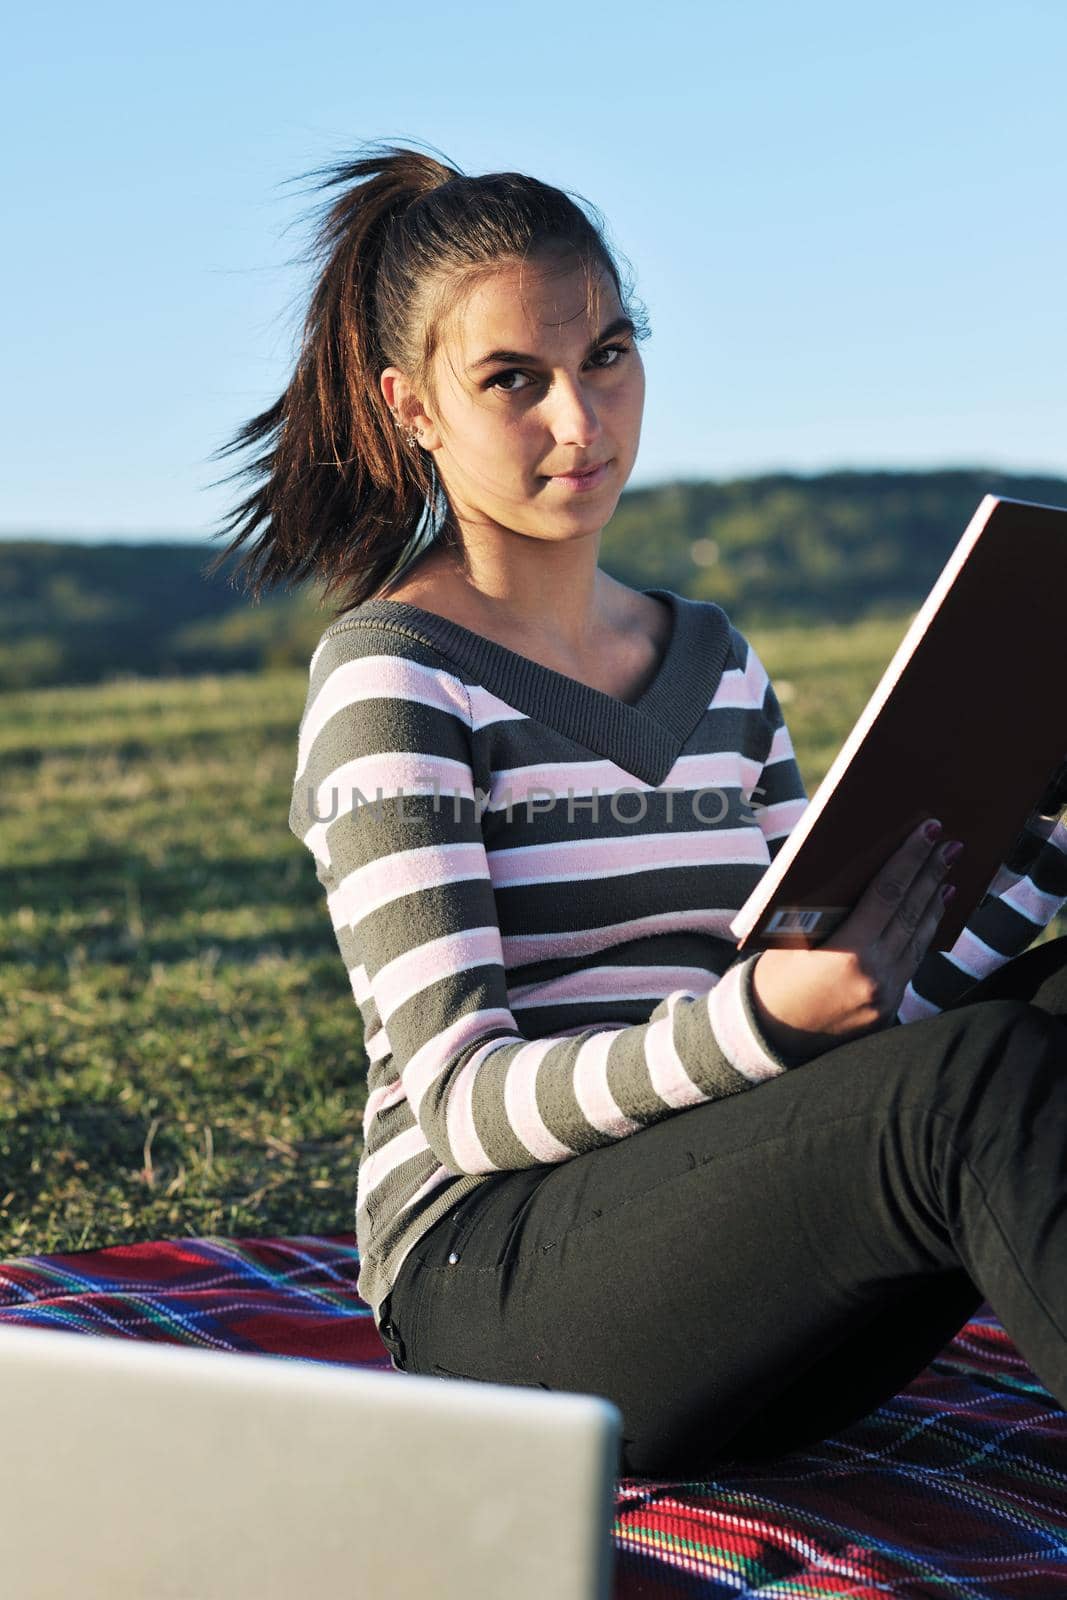 teen girl study outdoor by dotshock